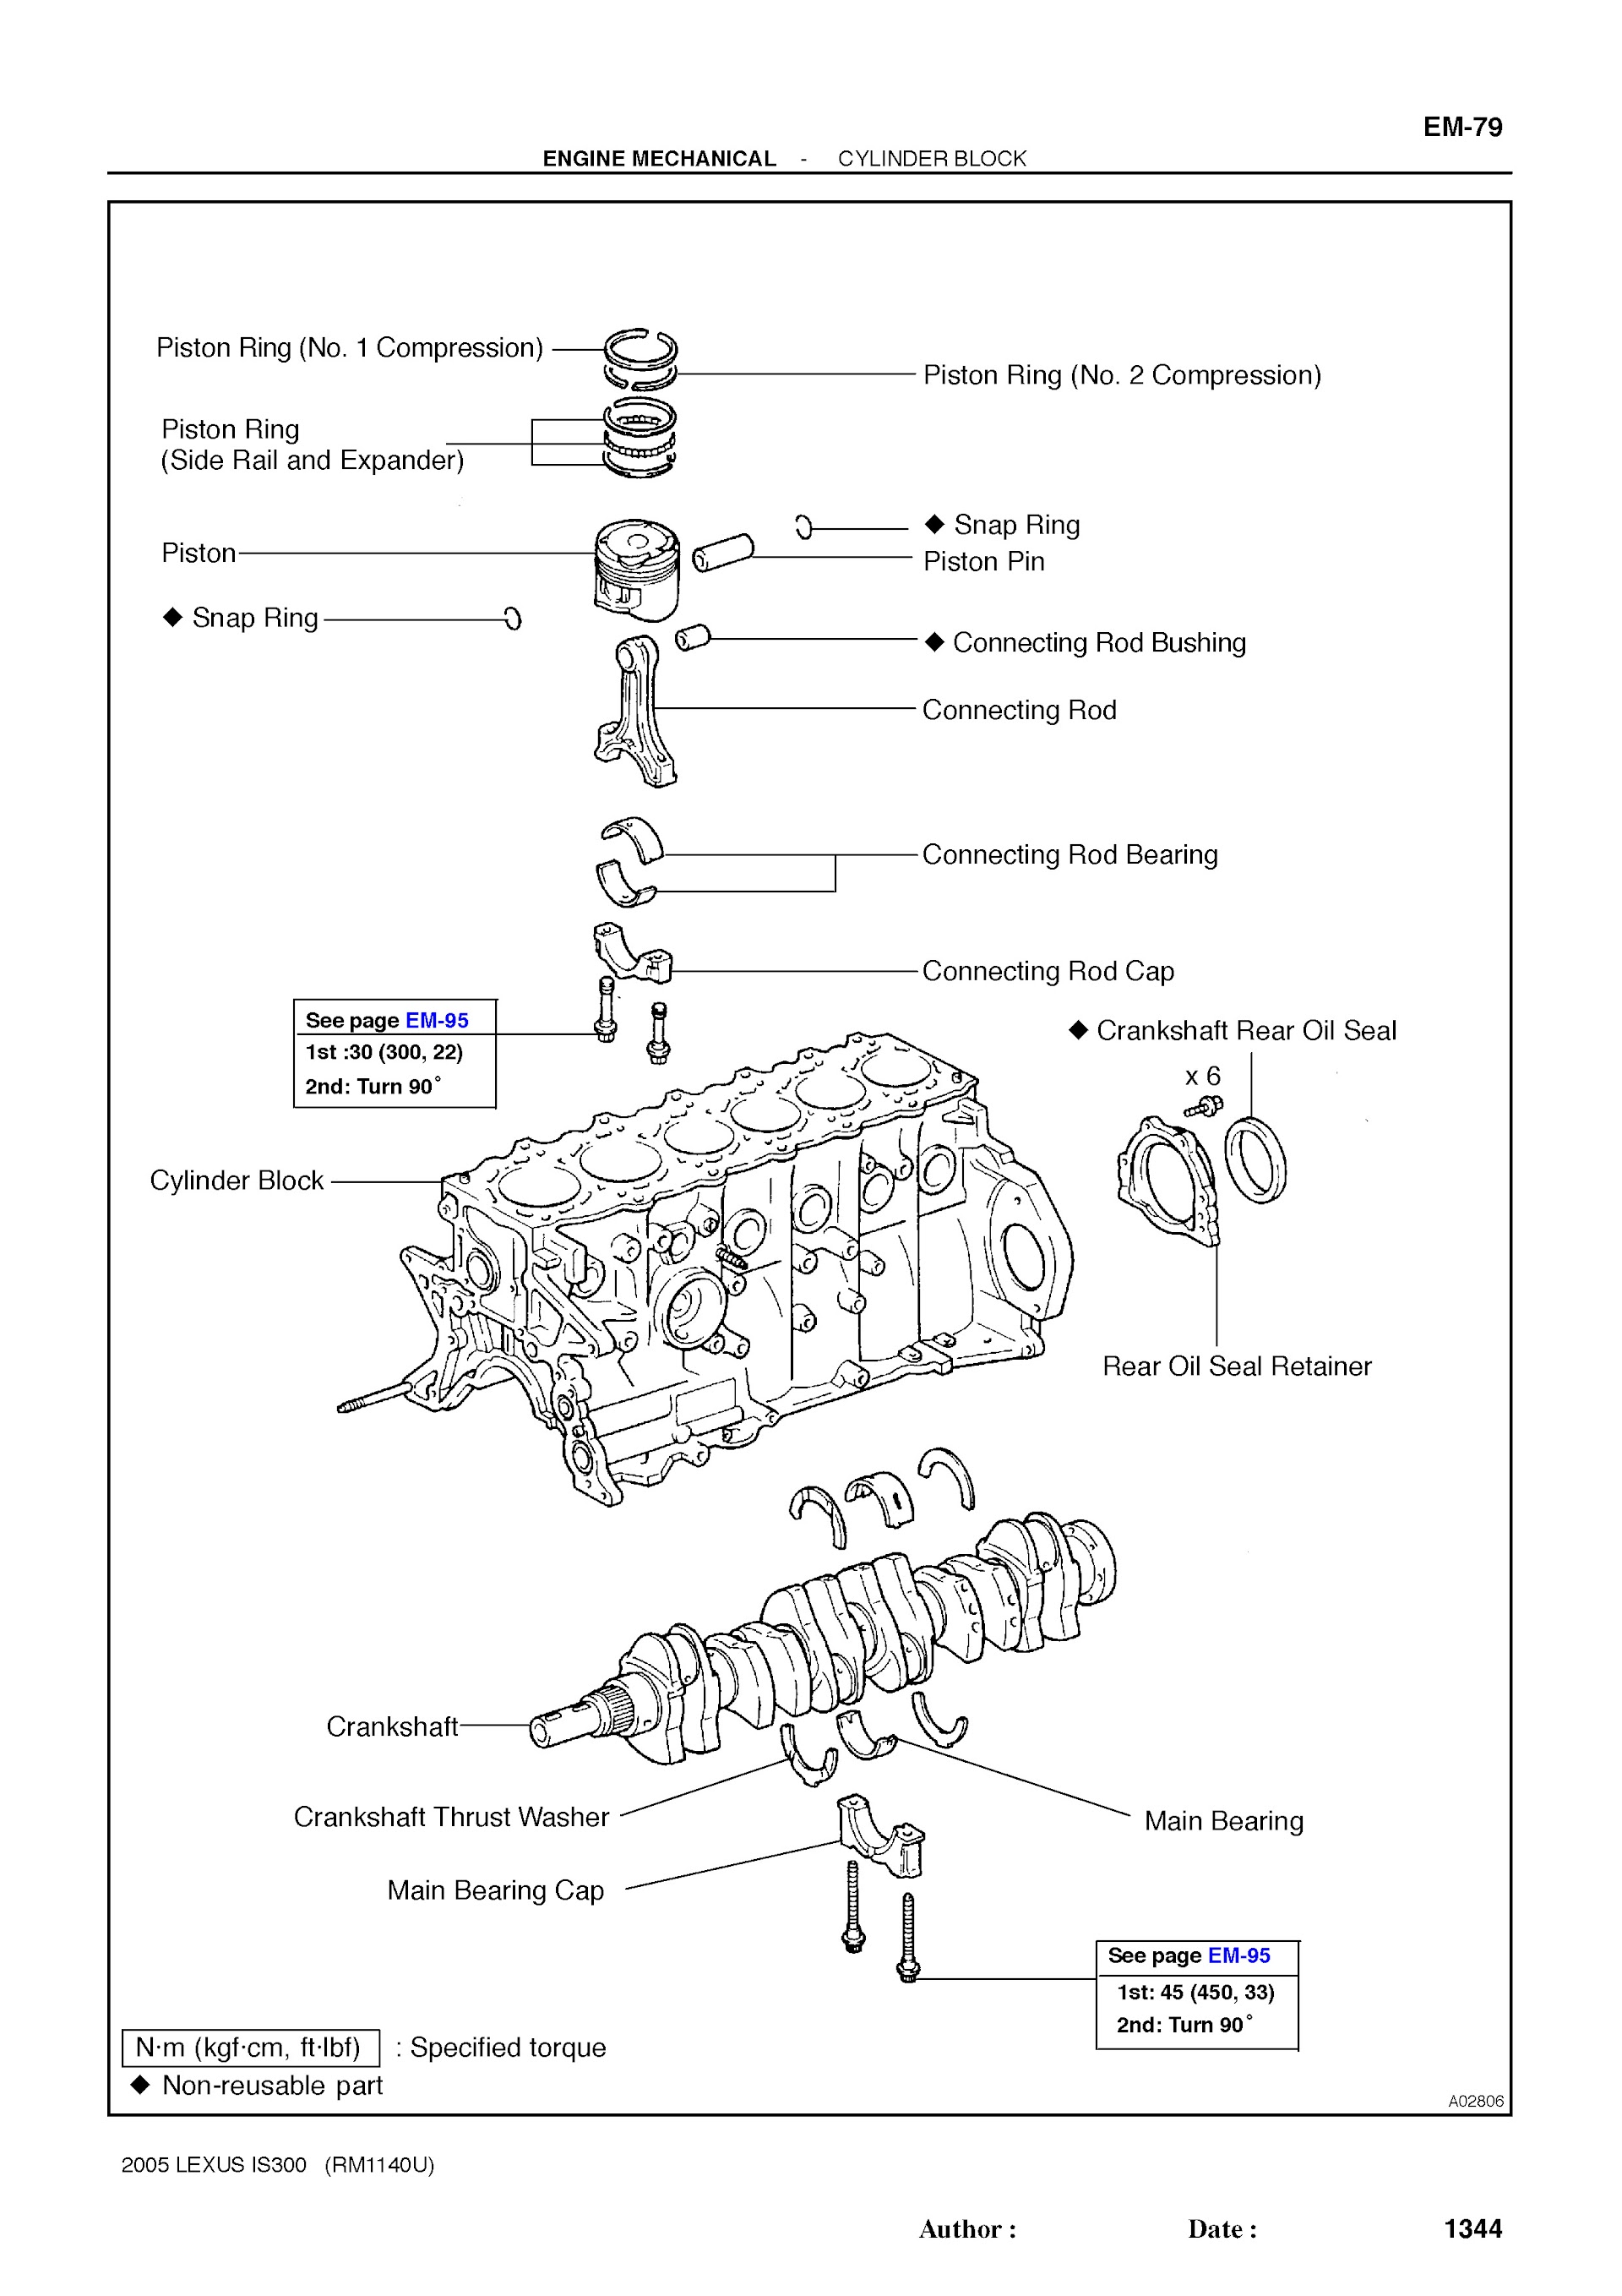 Download 2002-2005 Lexus IS300 Service Repair Manual.